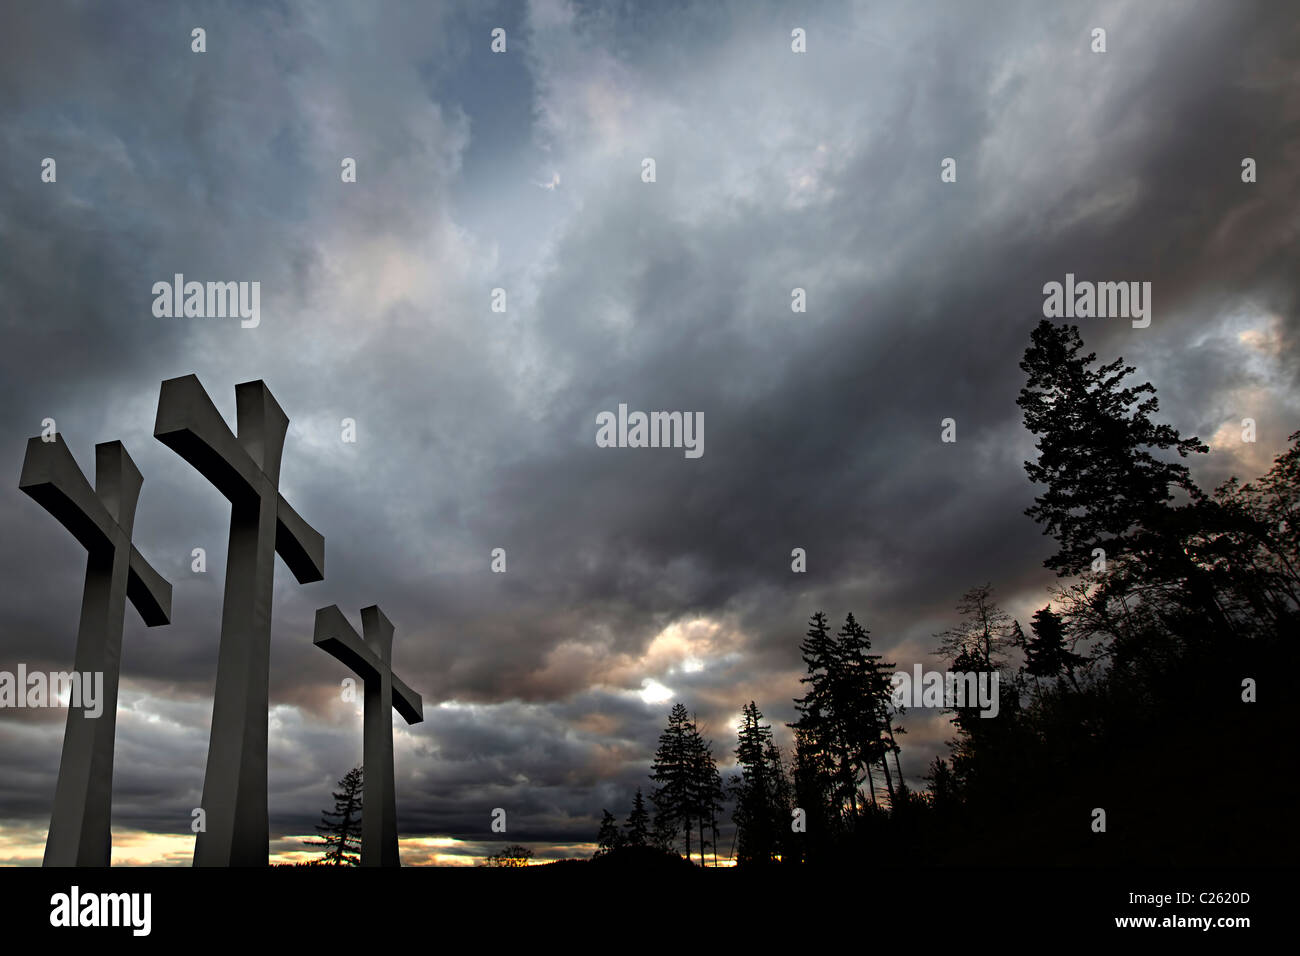 Karfreitag Ostern Kreuze Tag mit bewölktem Himmel und Bäume Hintergrund Stockfoto